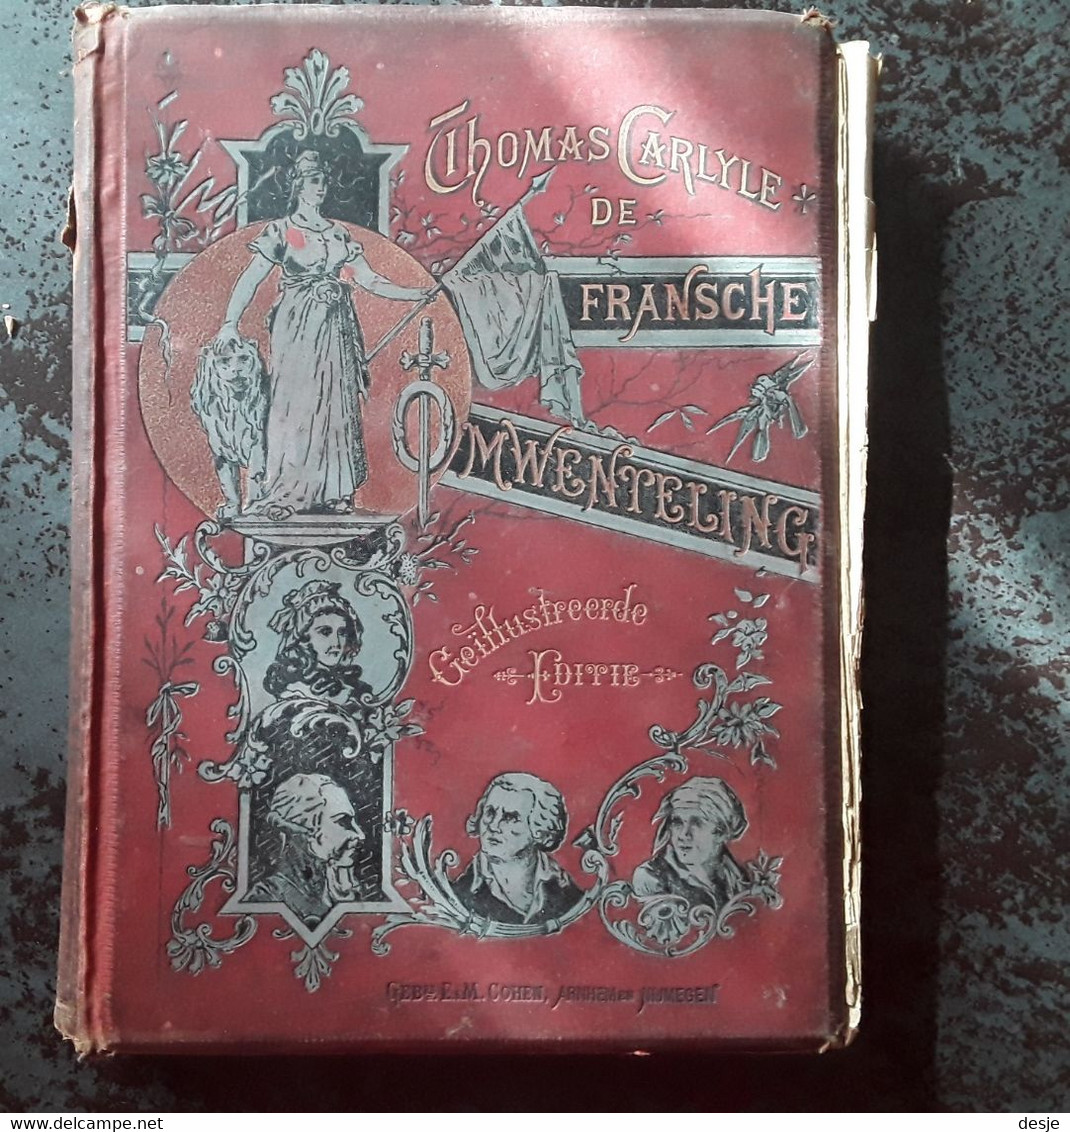 De Fransche Omwenteling Door Thomas Carlyle,tweede Deel De Constitutie, 4de Herziene Druk, Rond 1900, Nijmegen, 316 Pp. - Antiquariat